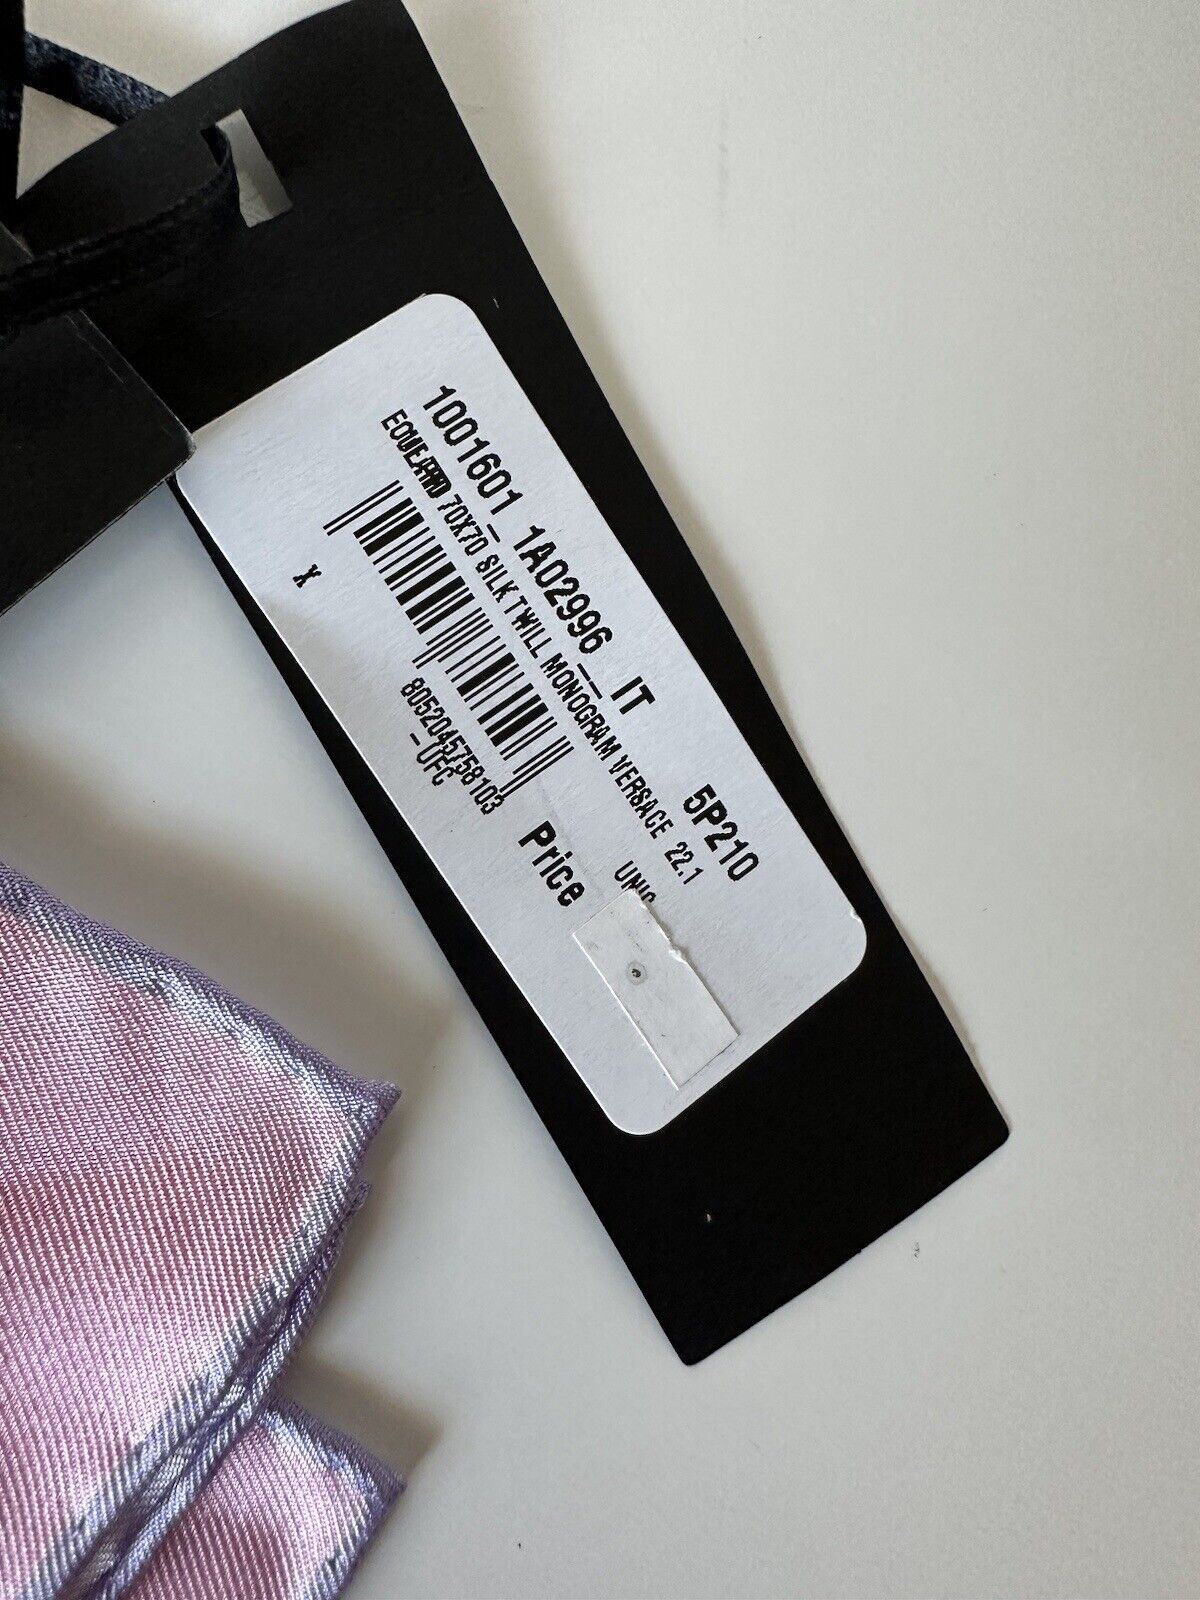 СЗТ 295 долларов Versace Шарф Love Medusa из шелкового твила с монограммой, 25,5 x 26 дюймов, Италия 1001601 